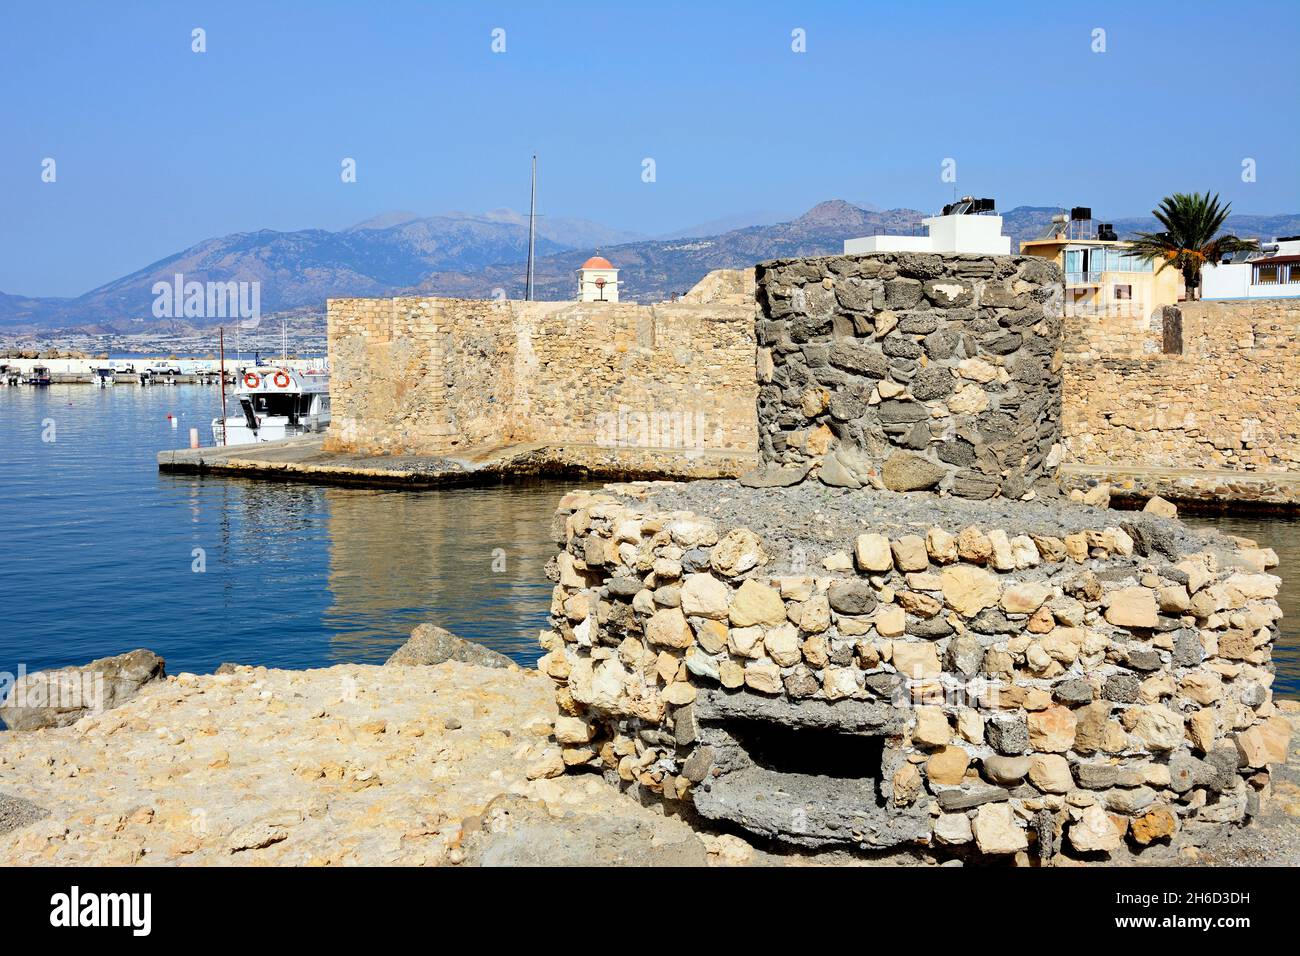 Blick auf die Kales venezianischen Festung am Eingang zum Hafen mit einem alten Turm im Vordergrund, Ierapetra, Kreta, Griechenland, Europa. Stockfoto